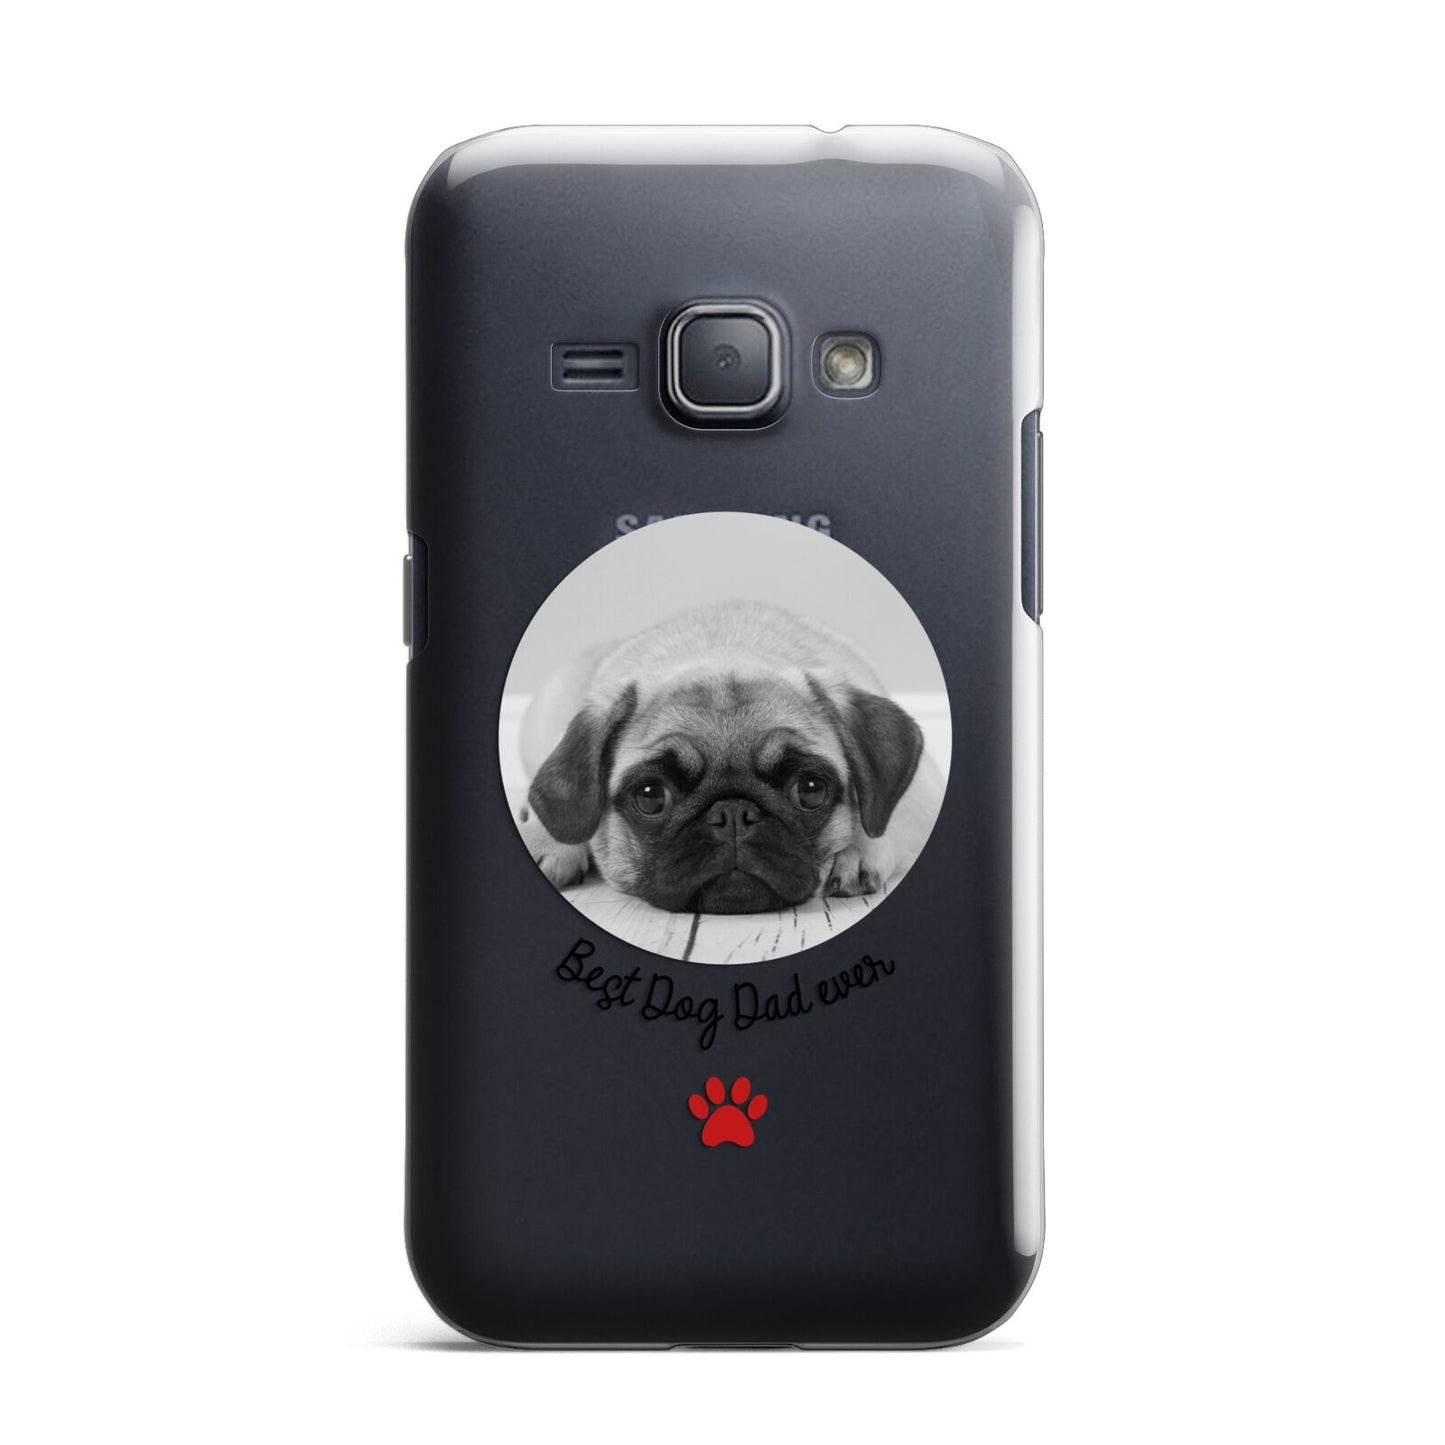 Best Dog Dad Ever Photo Upload Samsung Galaxy J1 2016 Case